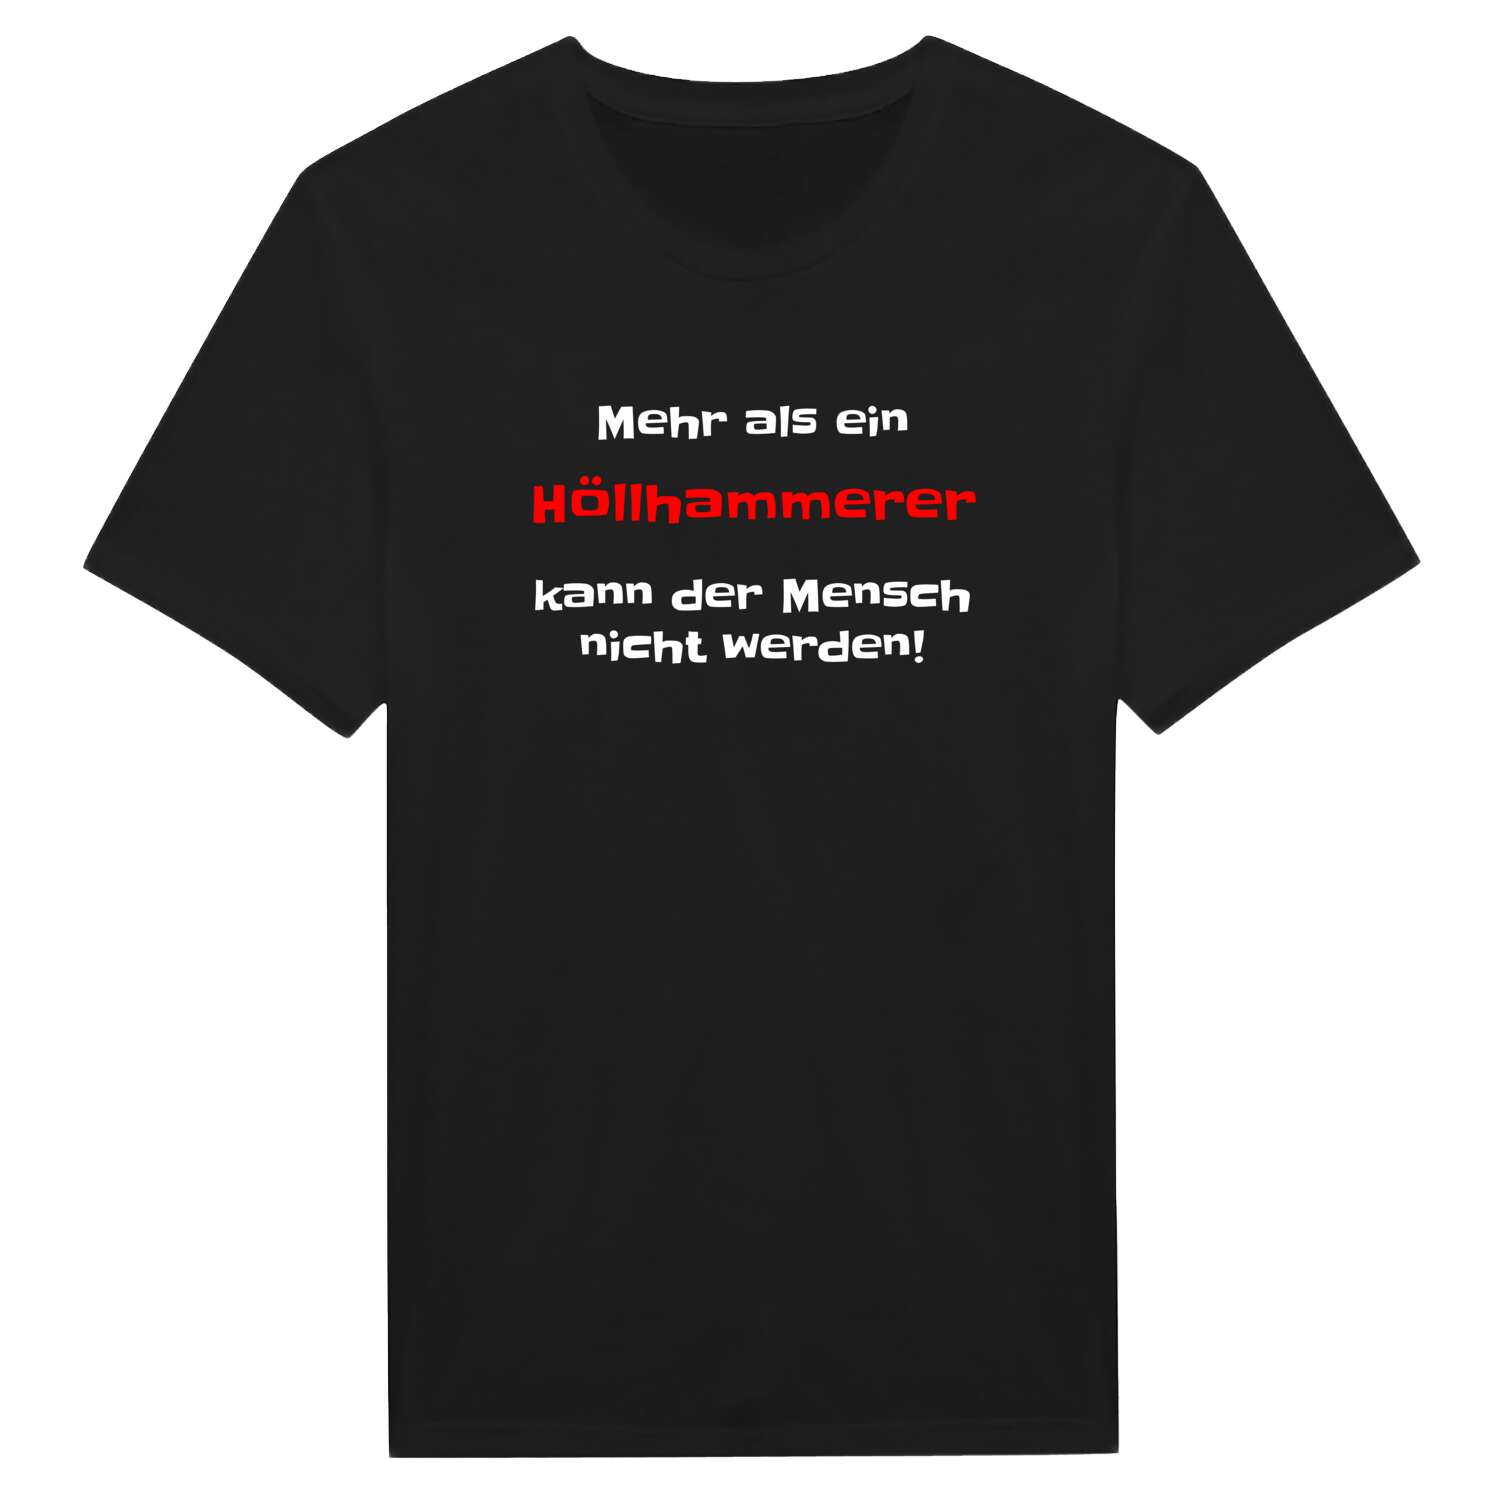 Höllhammer T-Shirt »Mehr als ein«